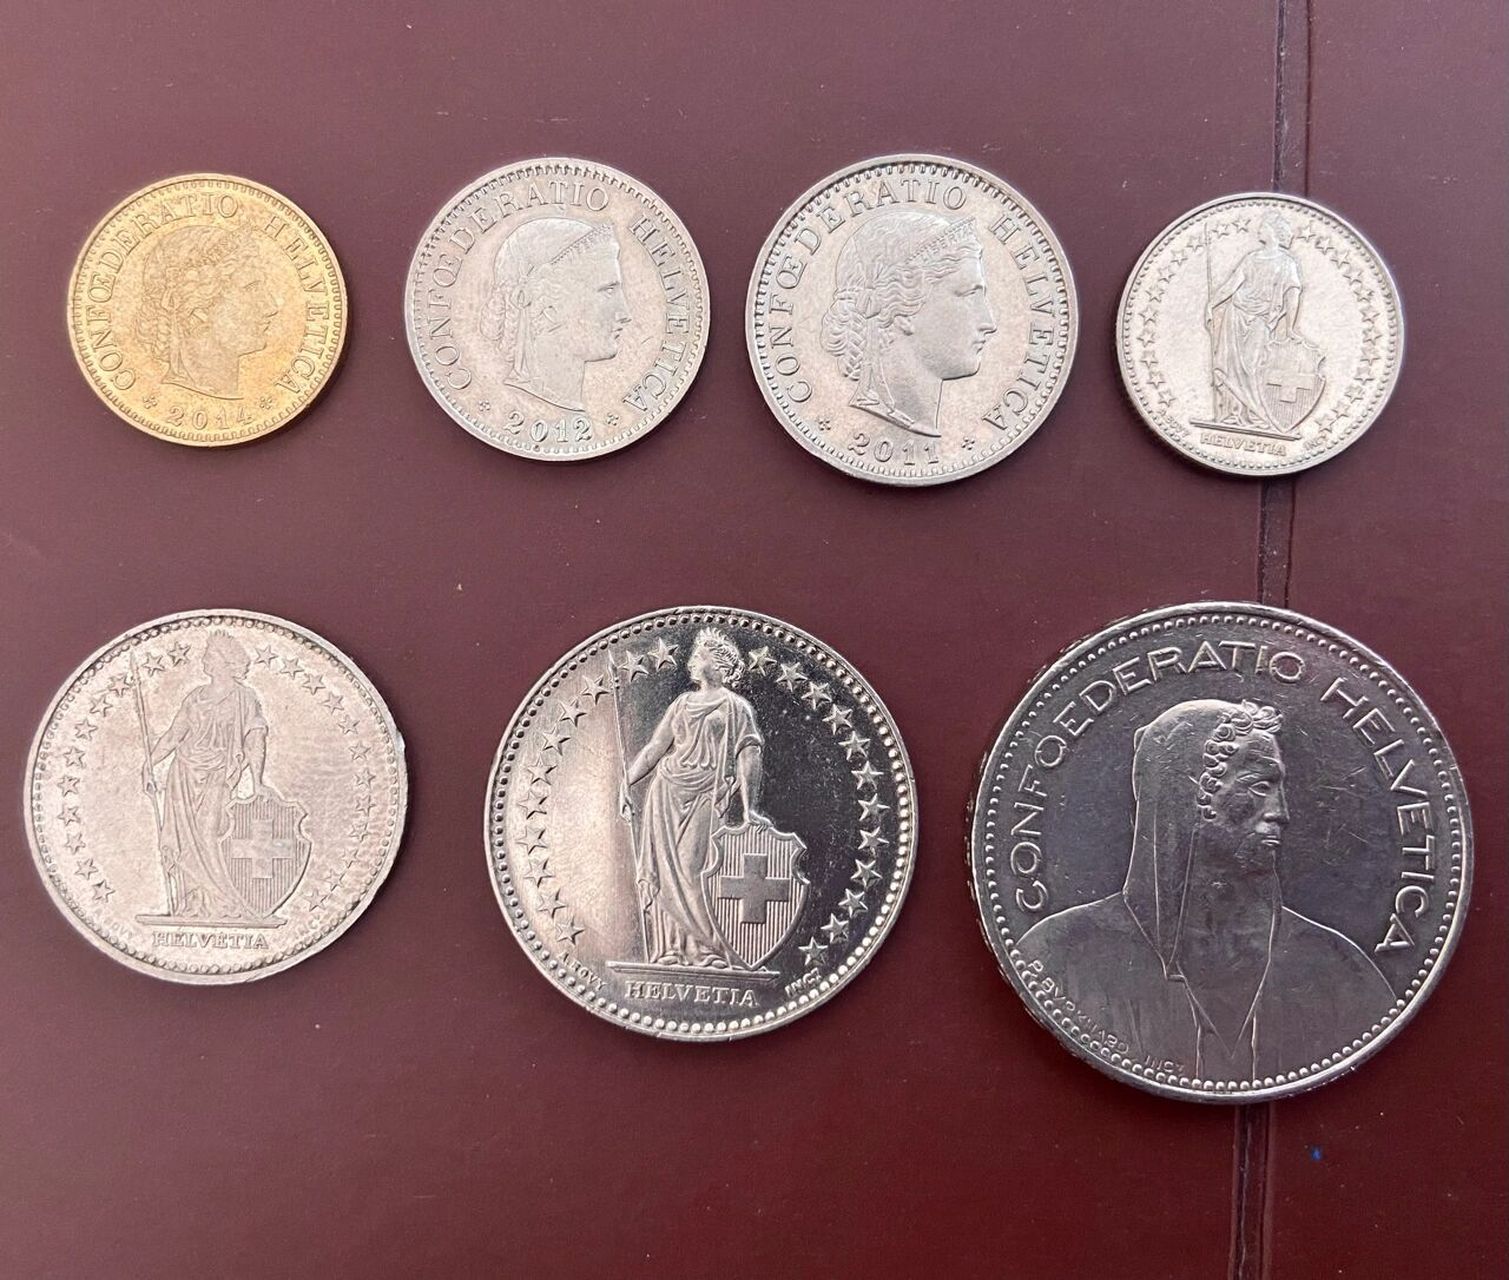 瑞士硬币图片大全图片